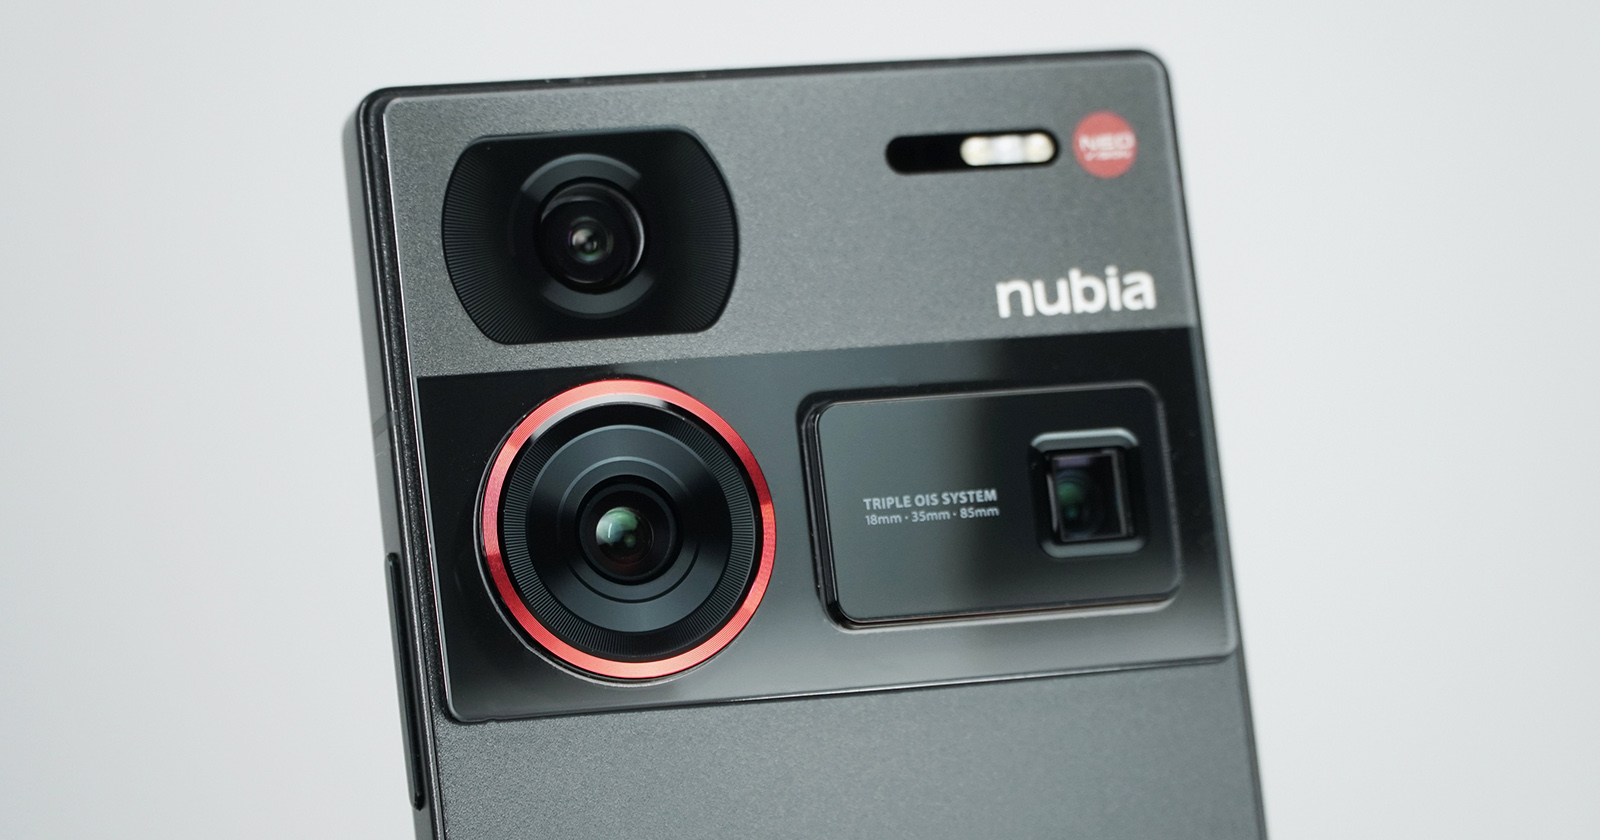 Nubia Z60 Ultra design revealed through leaked image